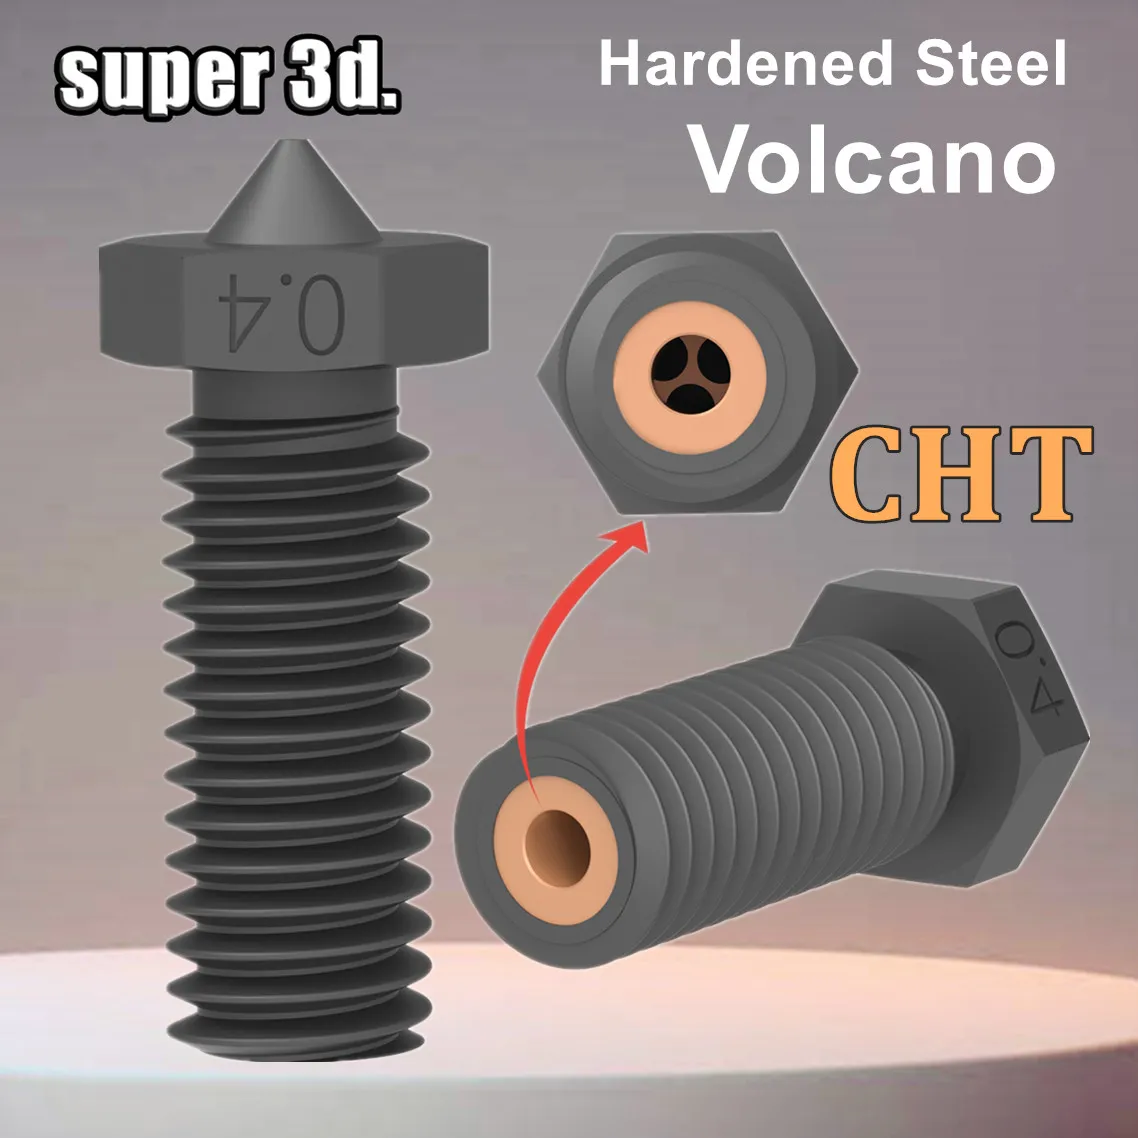 CHT 화산 경화 강철 깍지 3D 프린터, 고유량 CHT 클론, 엔더 3 포병 바이퍼 핫엔드 부품용 화산 500 ° 노즐